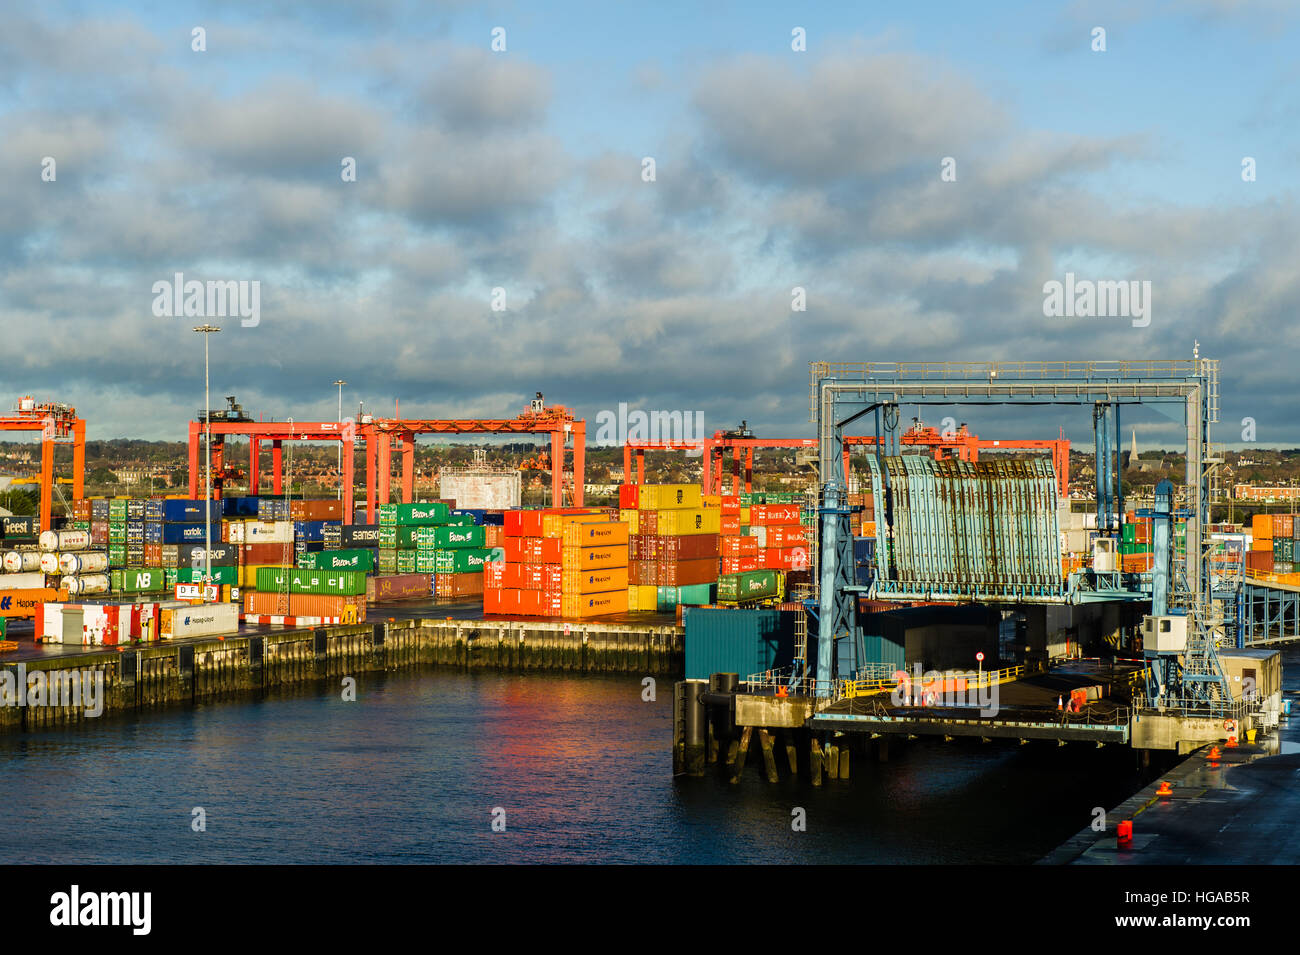 Hafen von Dublin, Dublin, Irland mit einer Autofähre Rampe, Kräne und Container mit kopieren. Stockfoto